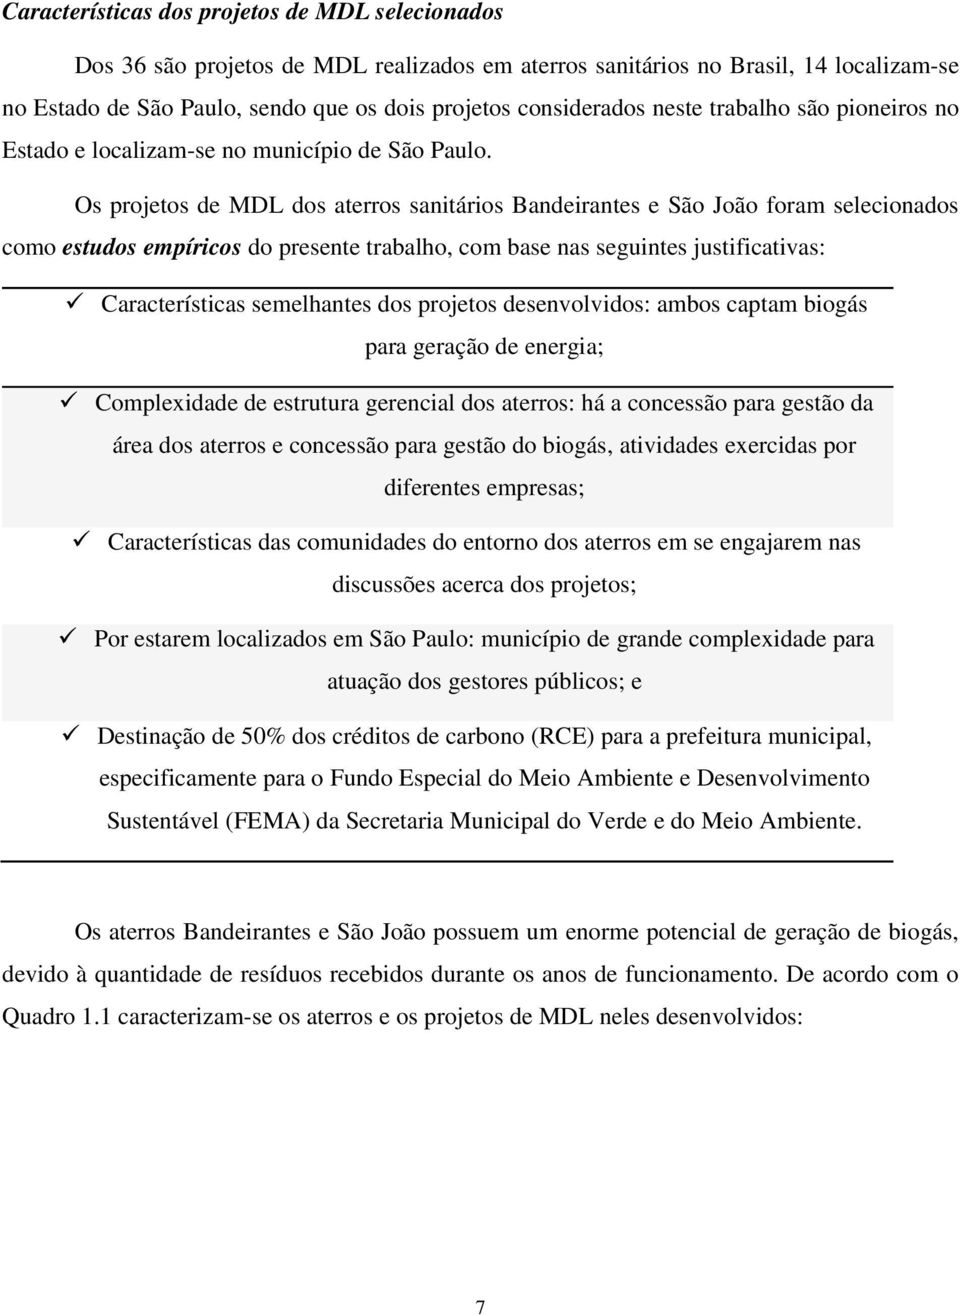 Os projetos de MDL dos aterros sanitários Bandeirantes e São João foram selecionados como estudos empíricos do presente trabalho, com base nas seguintes justificativas: Características semelhantes